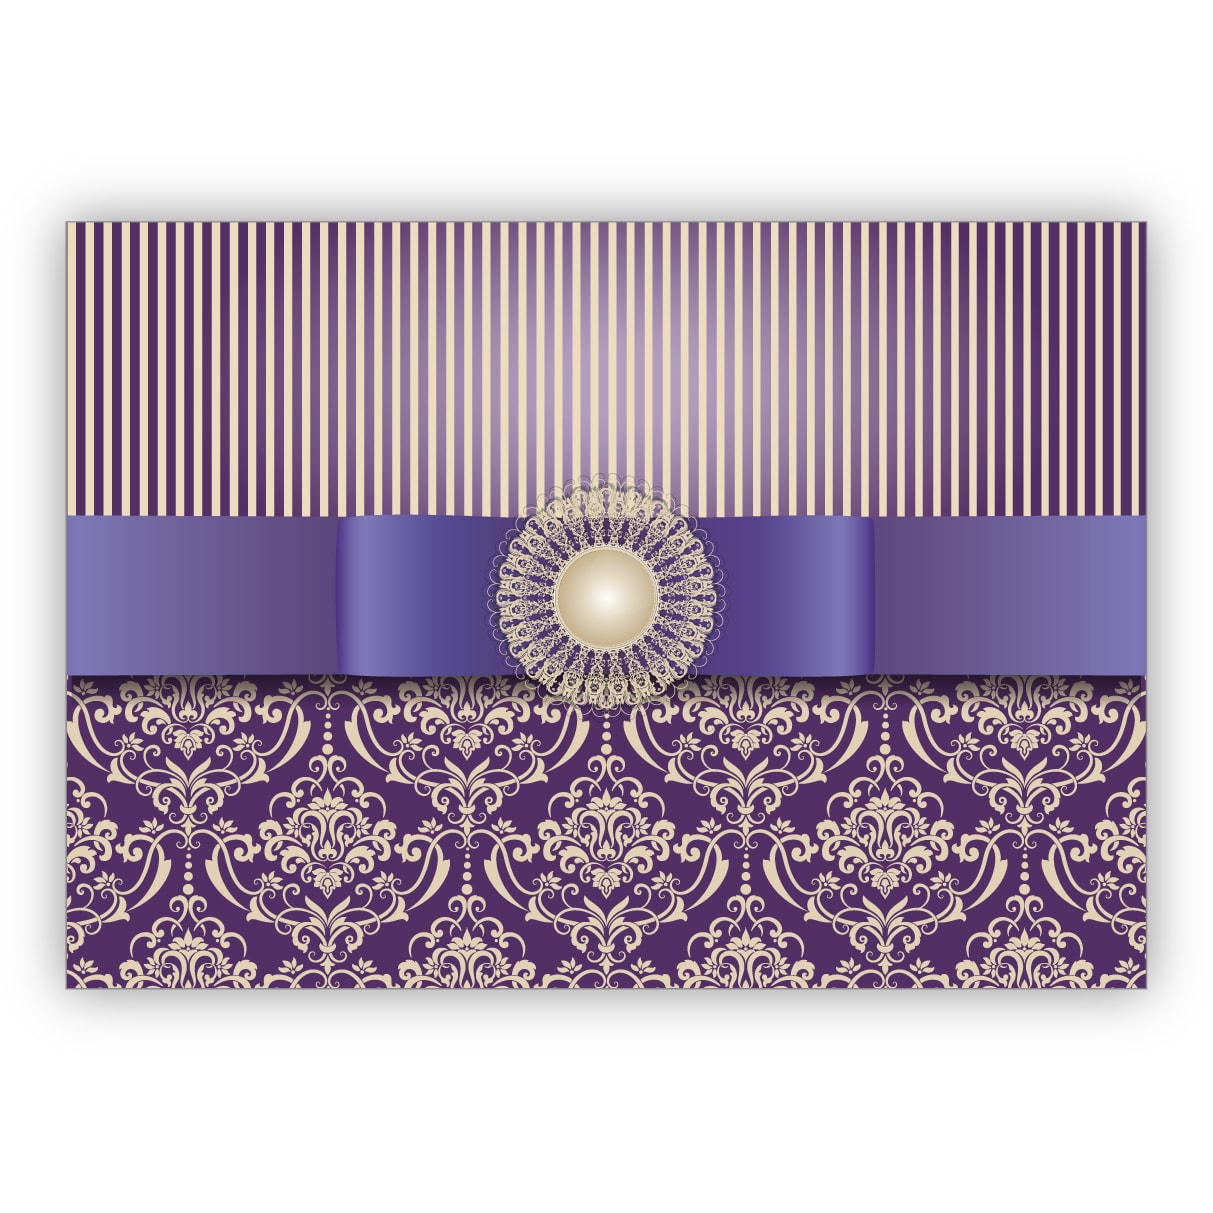 Vornehme Grußkarte im edlem Retro Look mit Vintage Damast Muster toll als Glückwunsch oder Einladung, lila violett